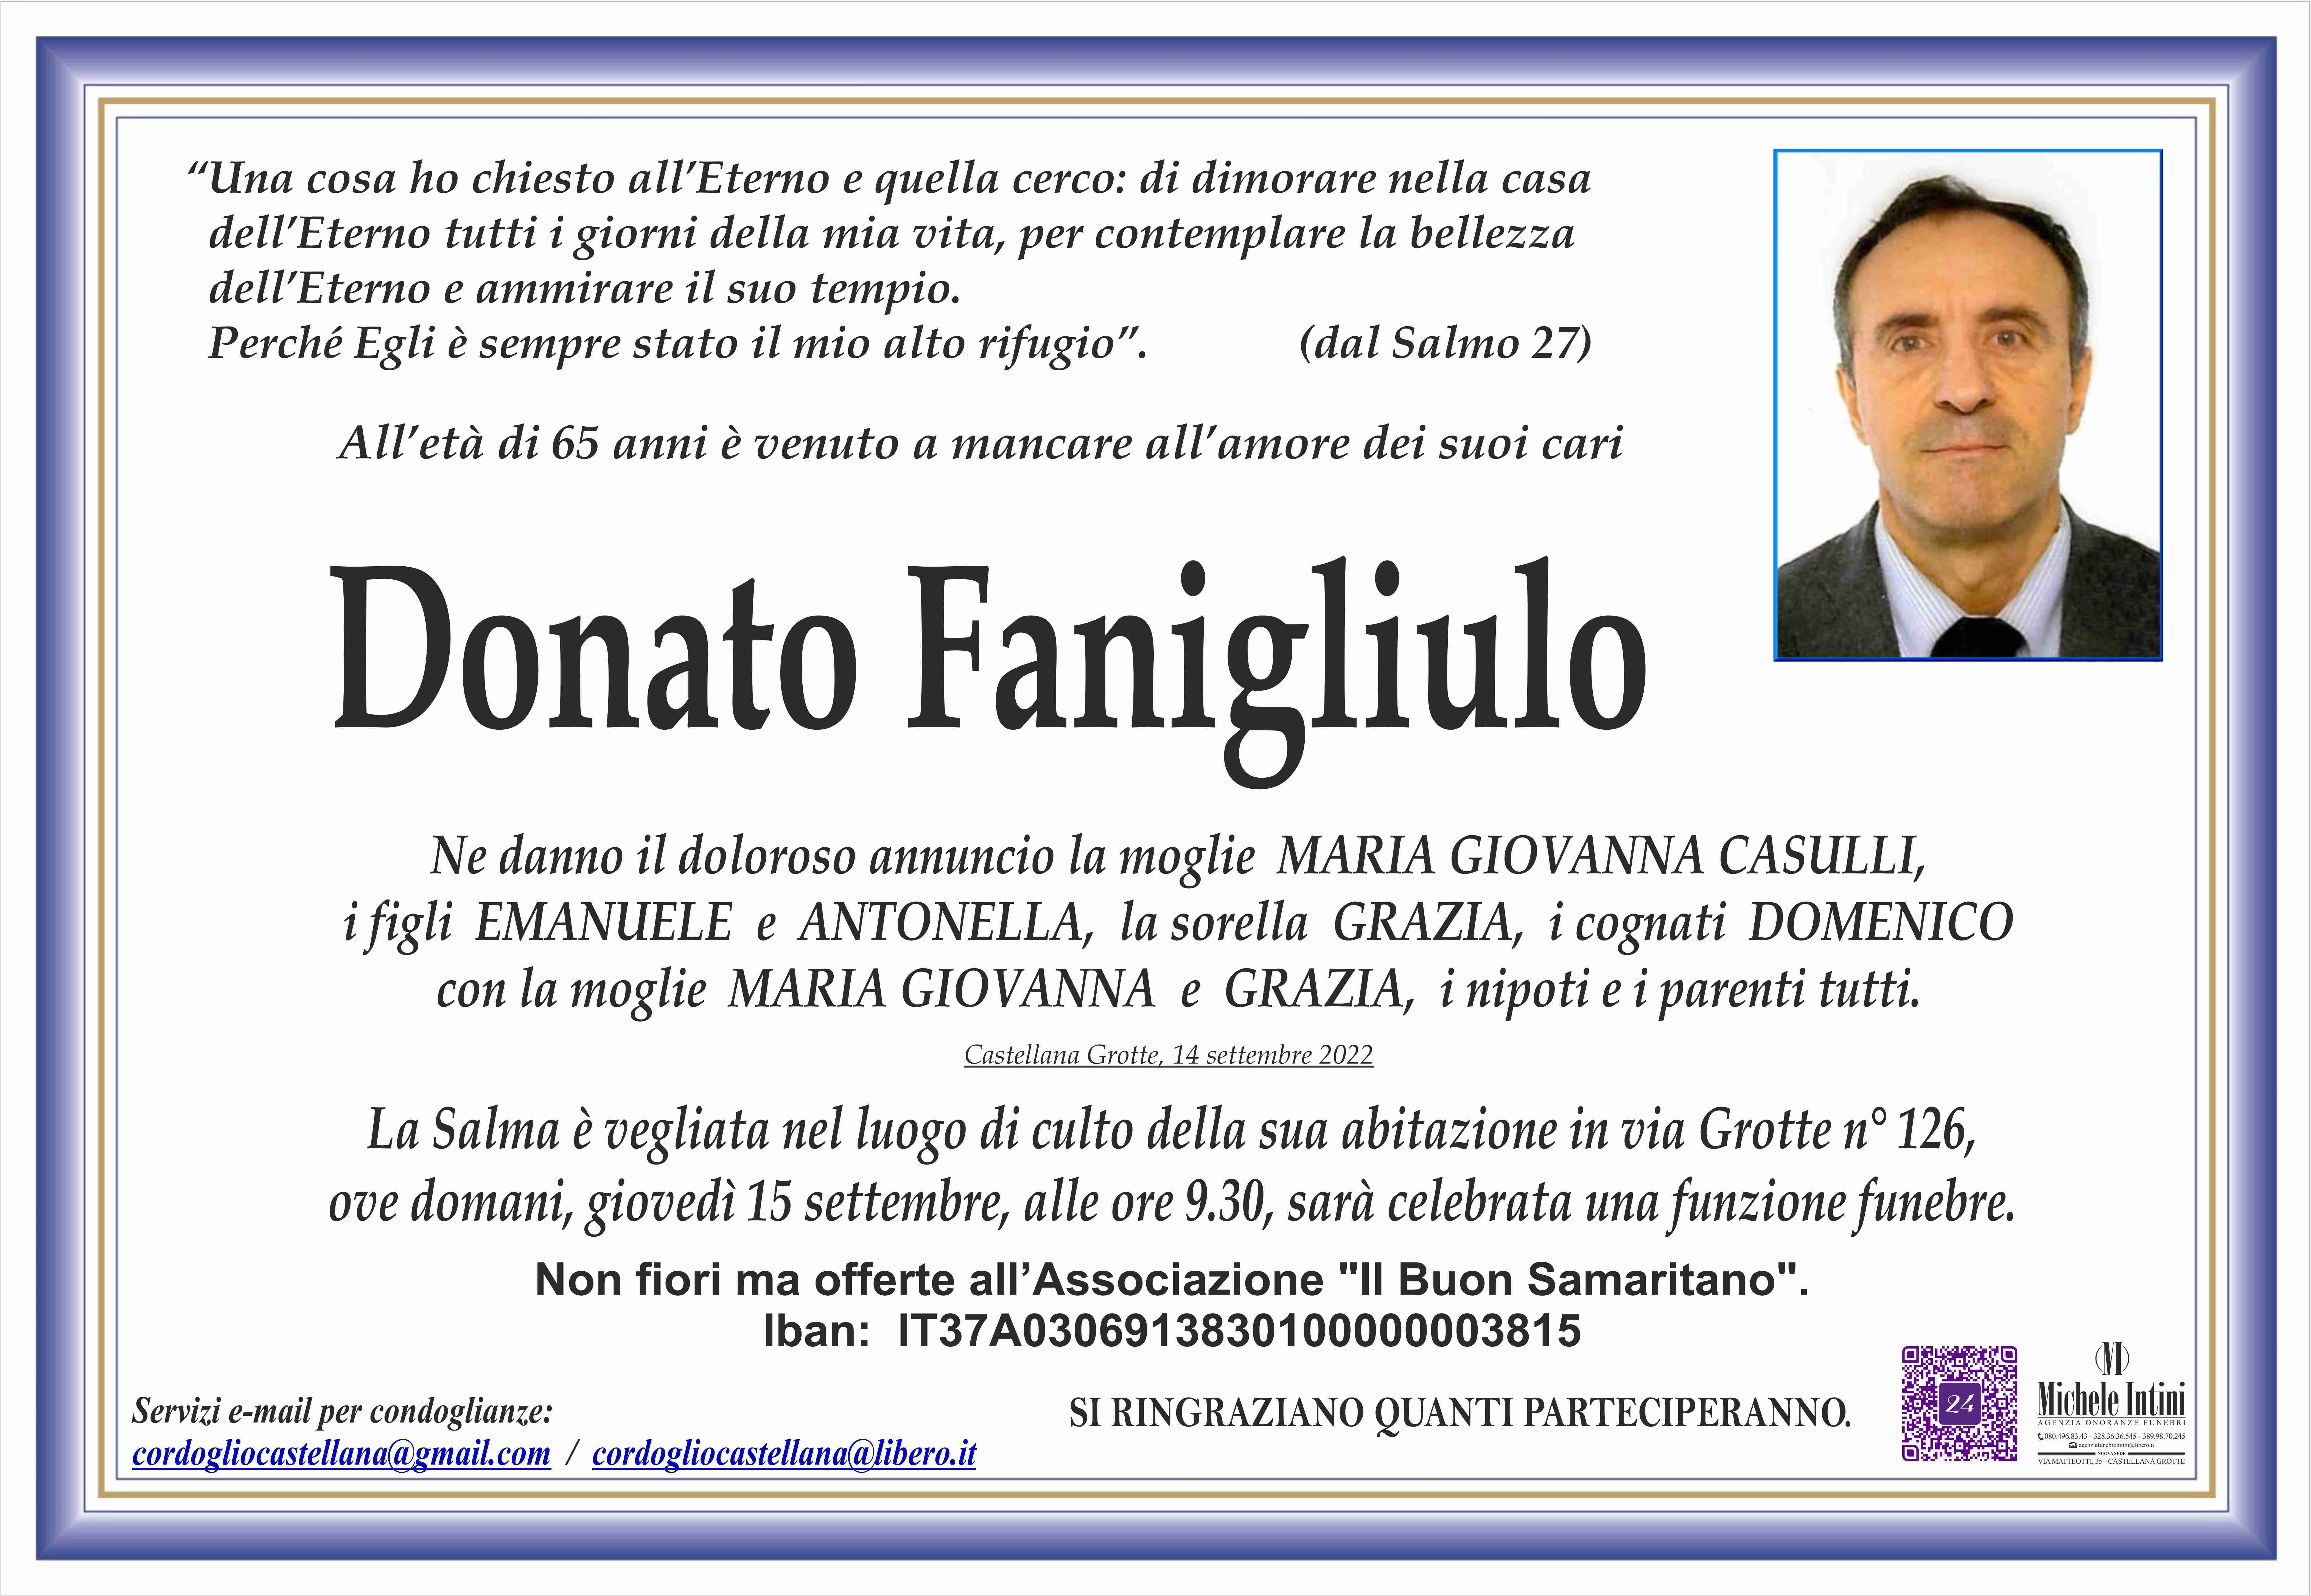 Donato Fanigliulo